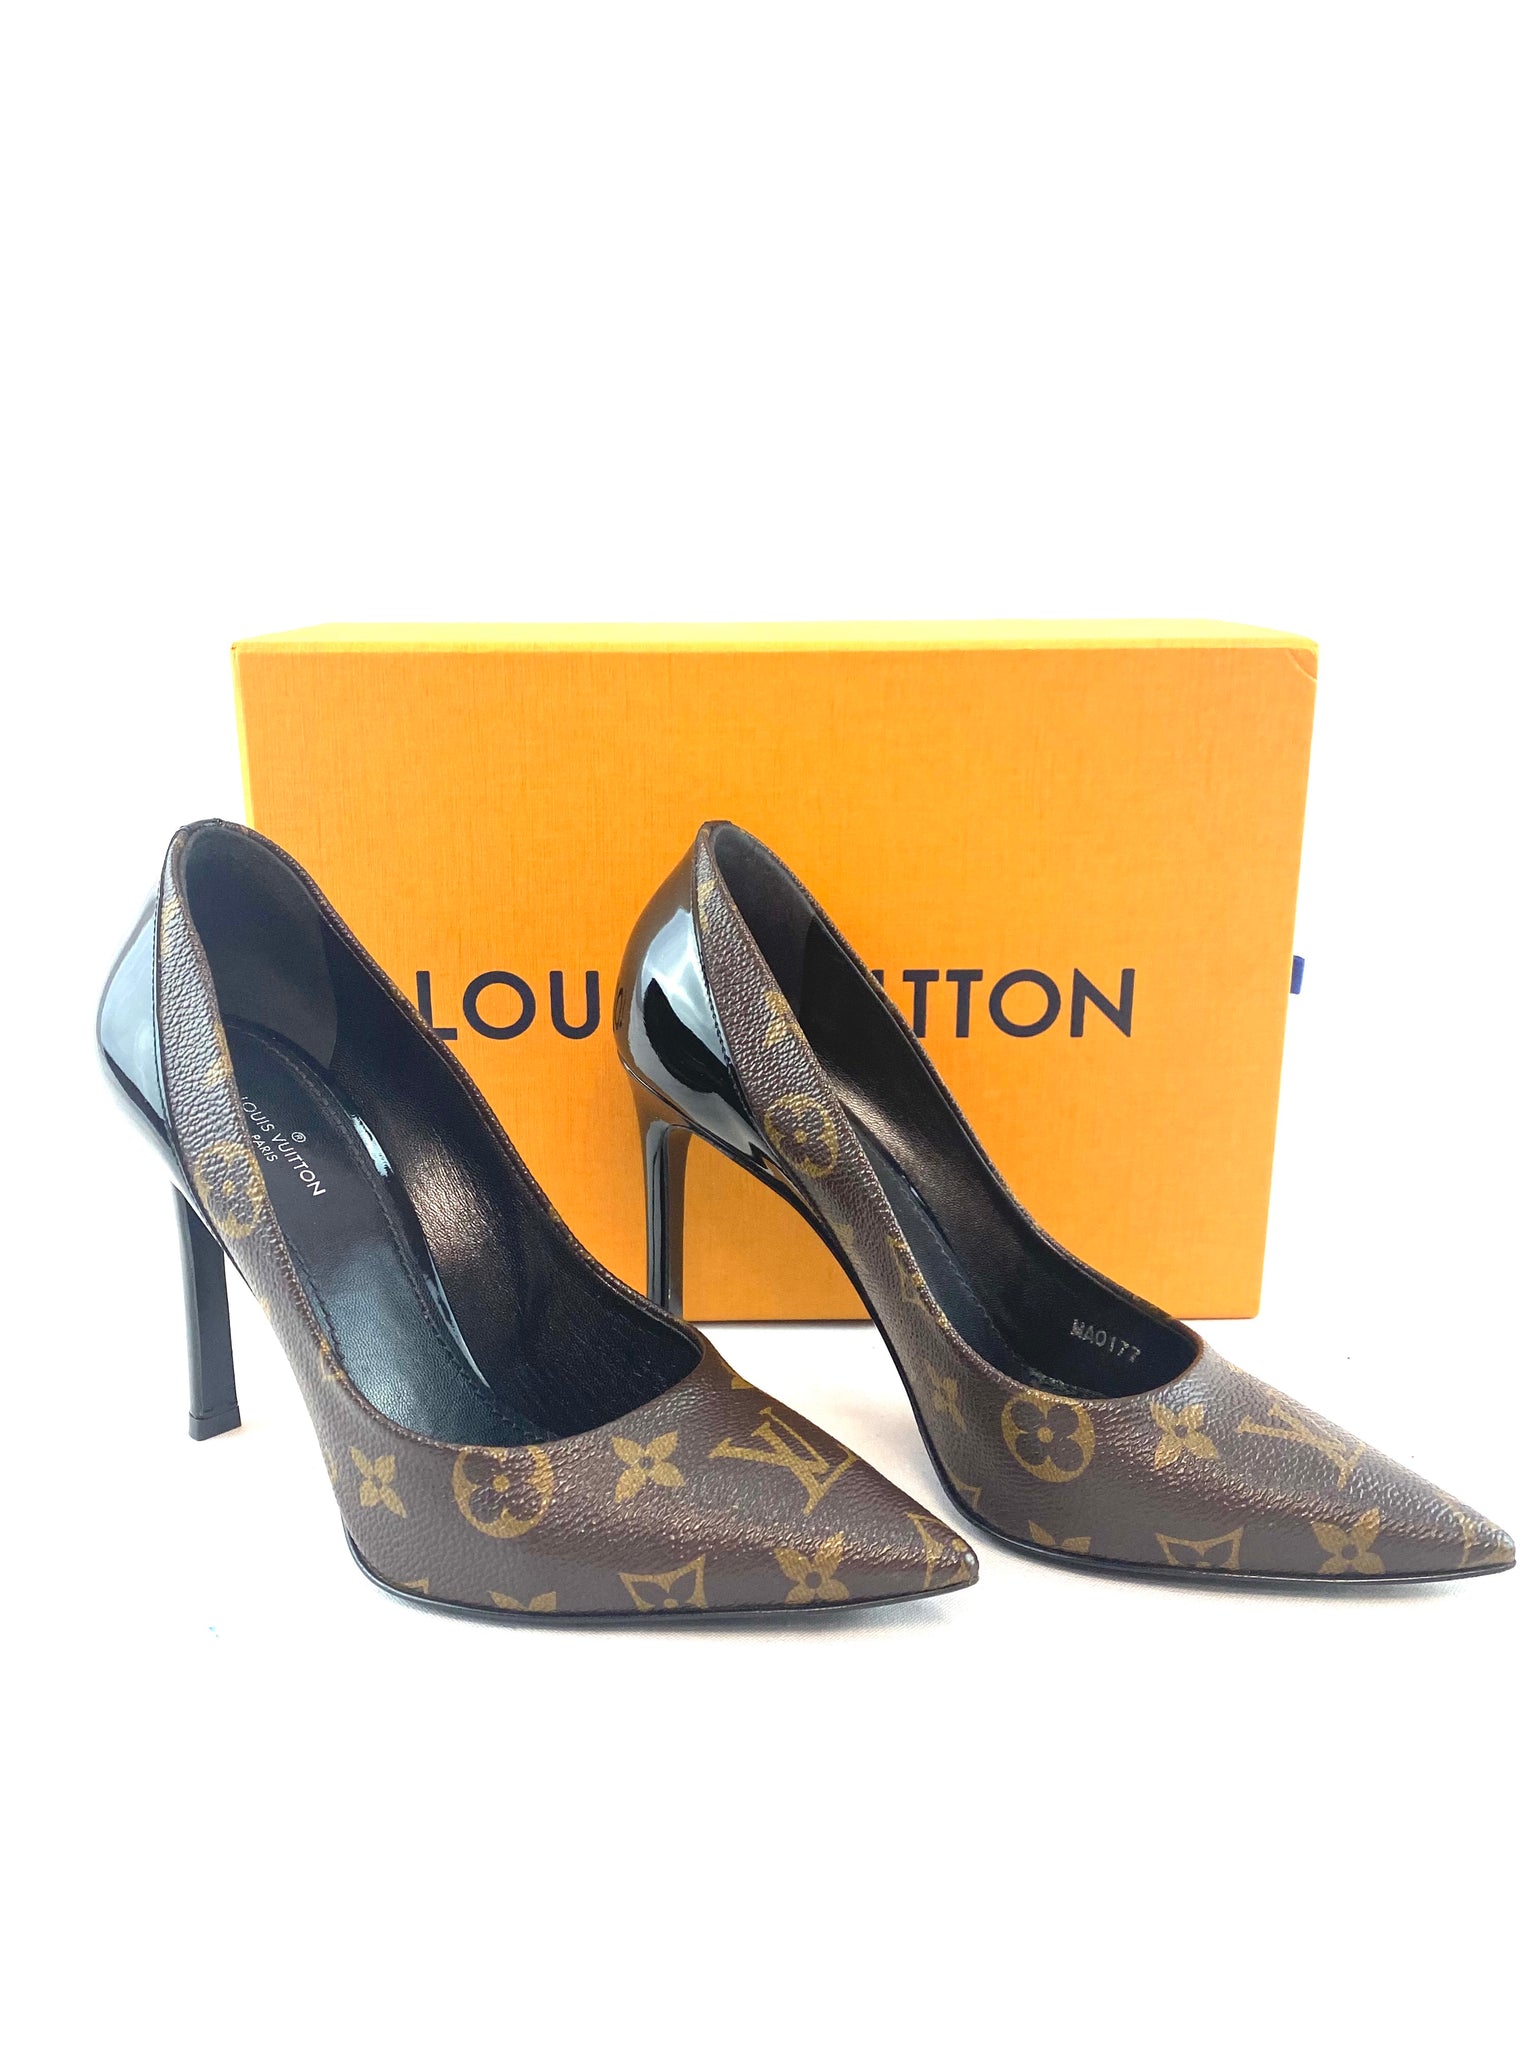 Louis Vuitton High Heels – thankunext.us